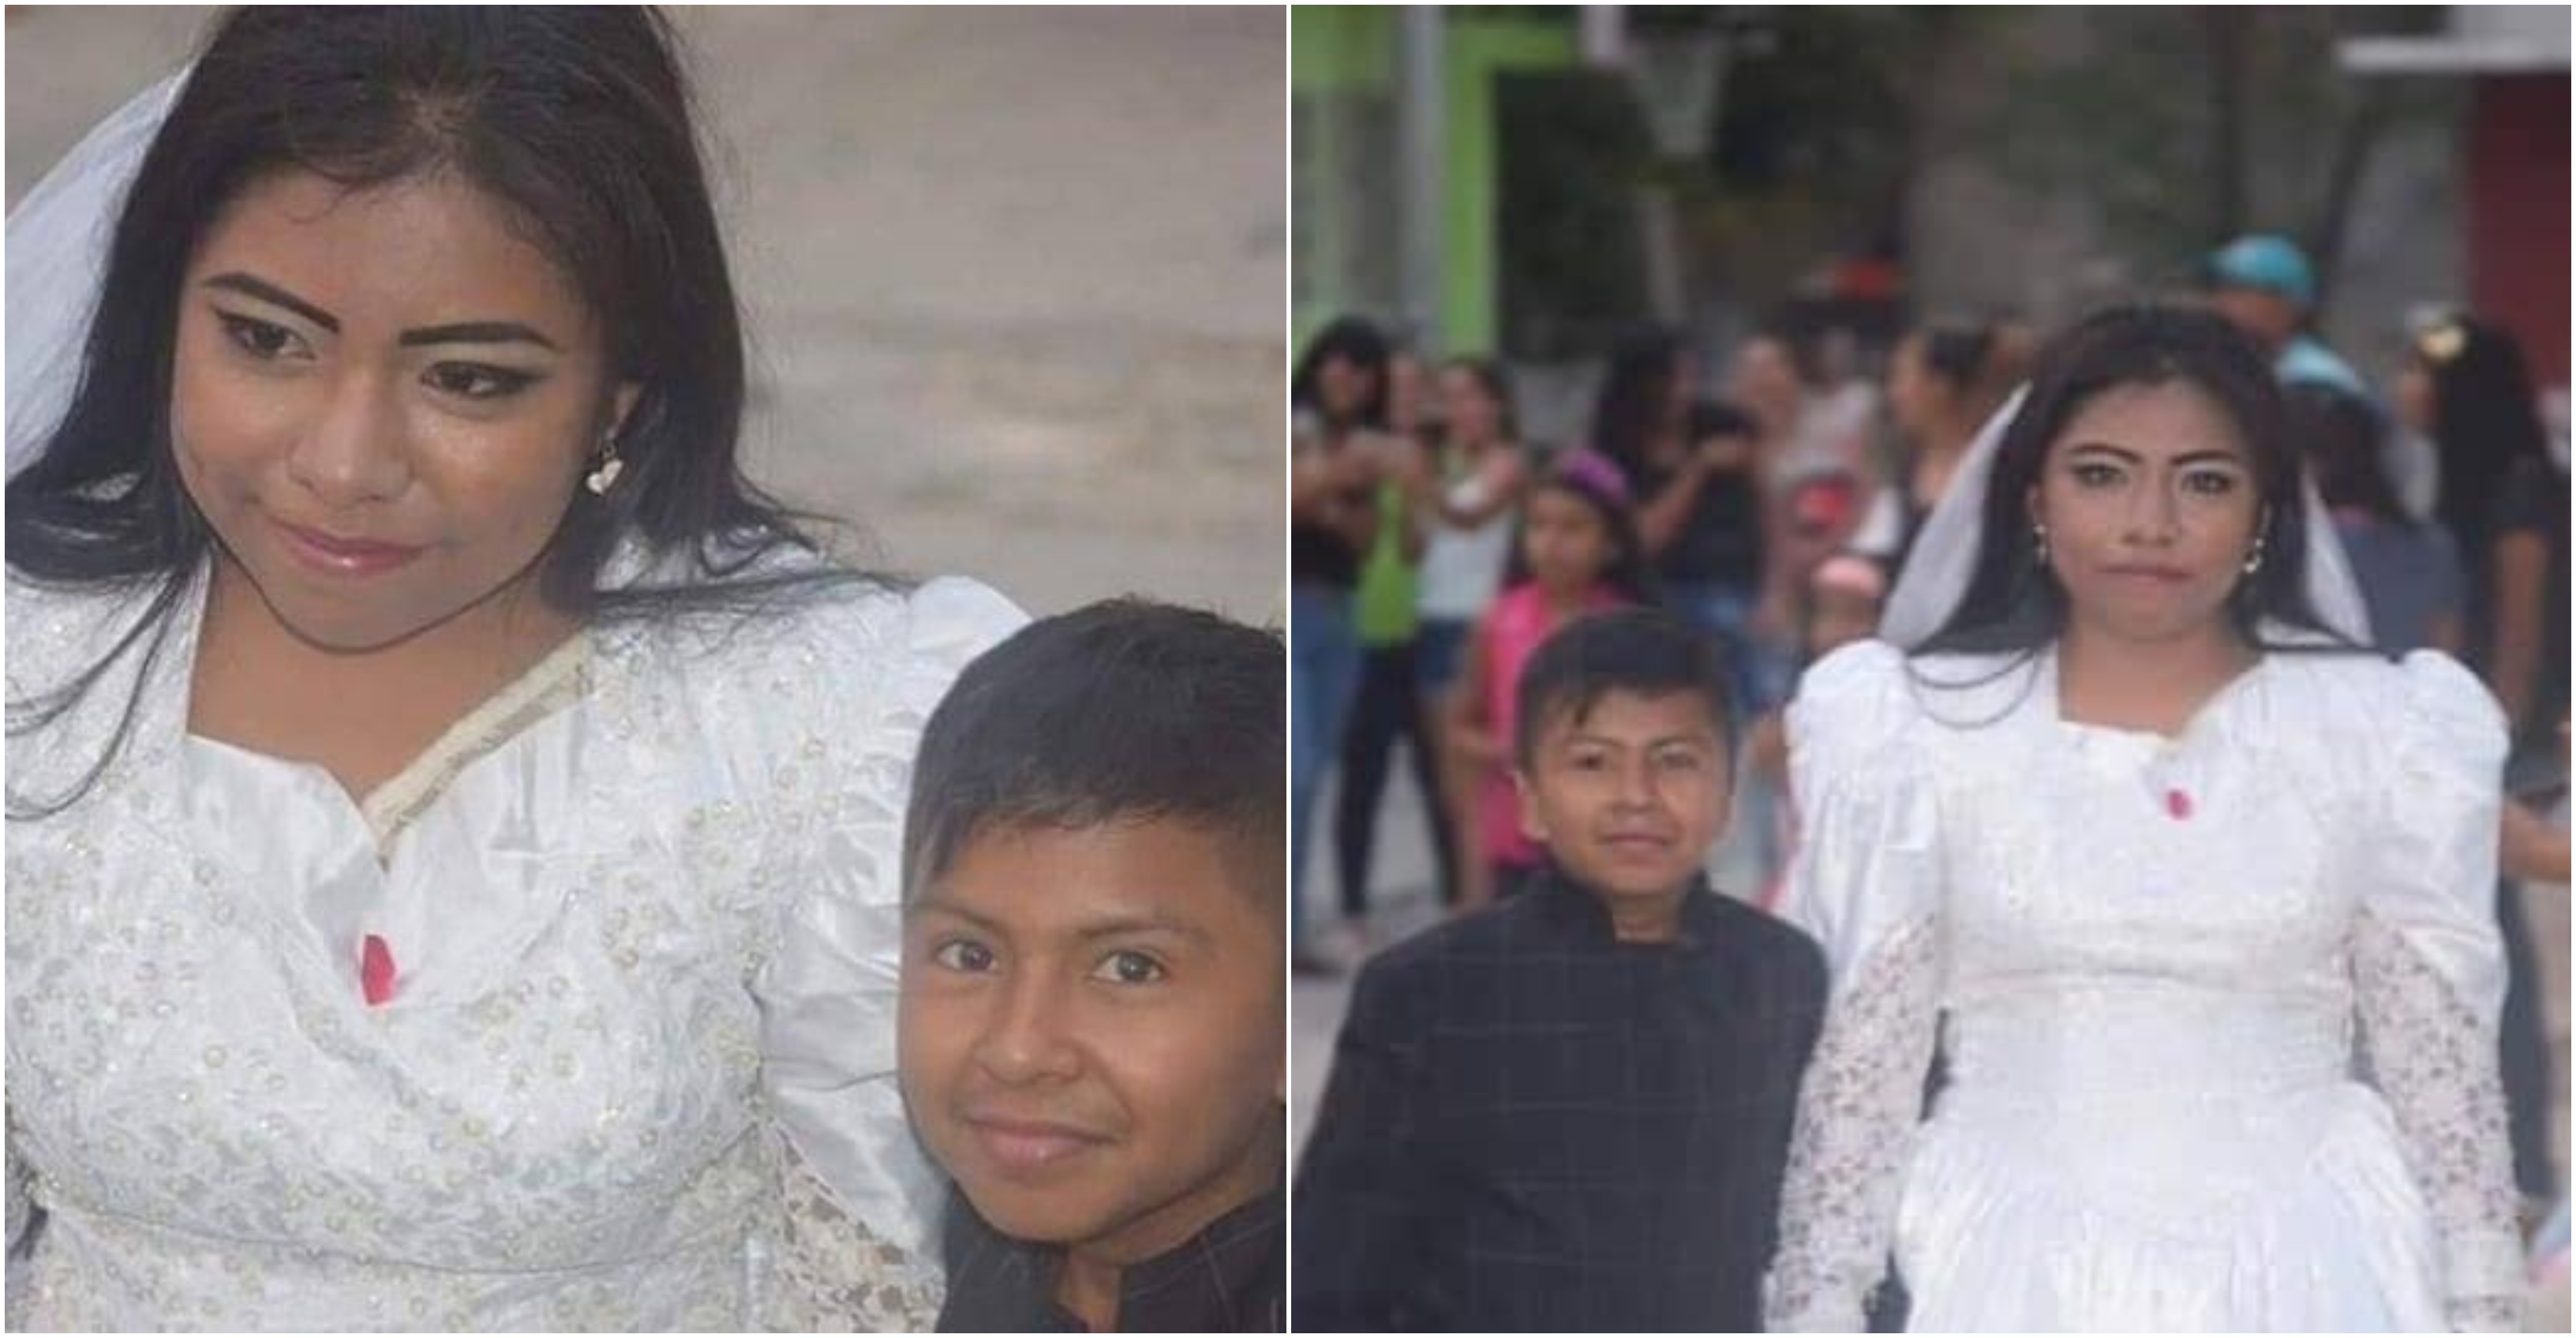 زواج شابة من طفل يثير السخرية في المكسيك قبل أن يكتشفوا الحقيقة بشأن العريس